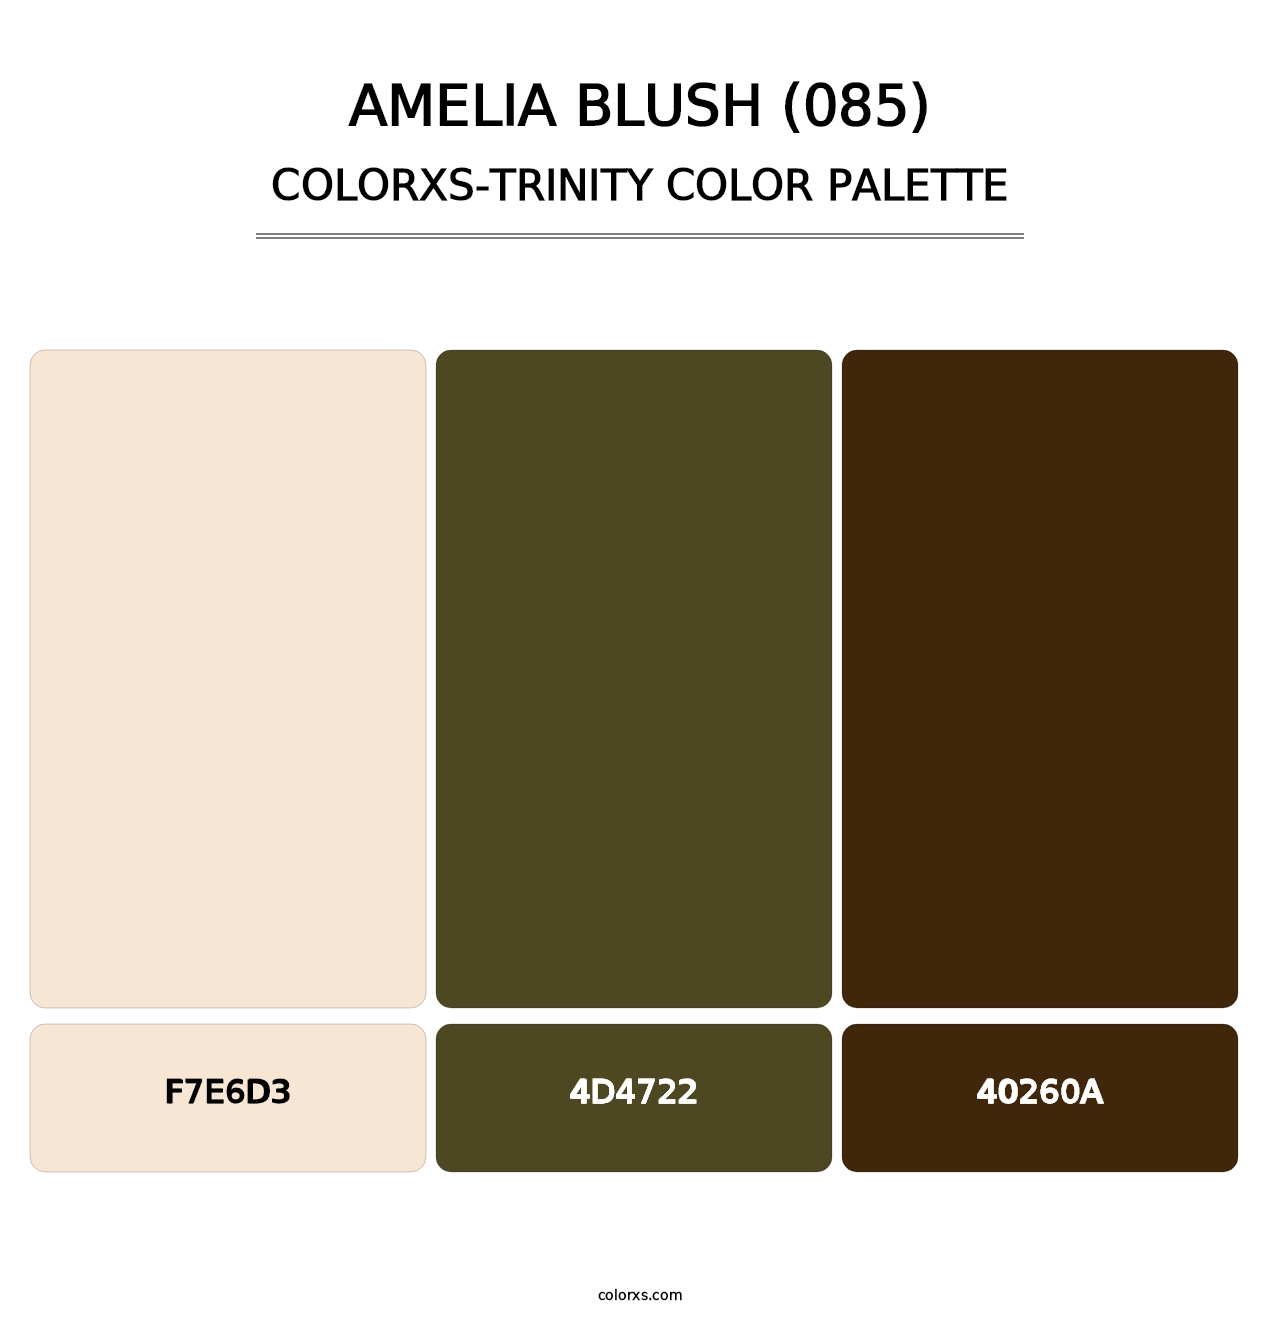 Amelia Blush (085) - Colorxs Trinity Palette